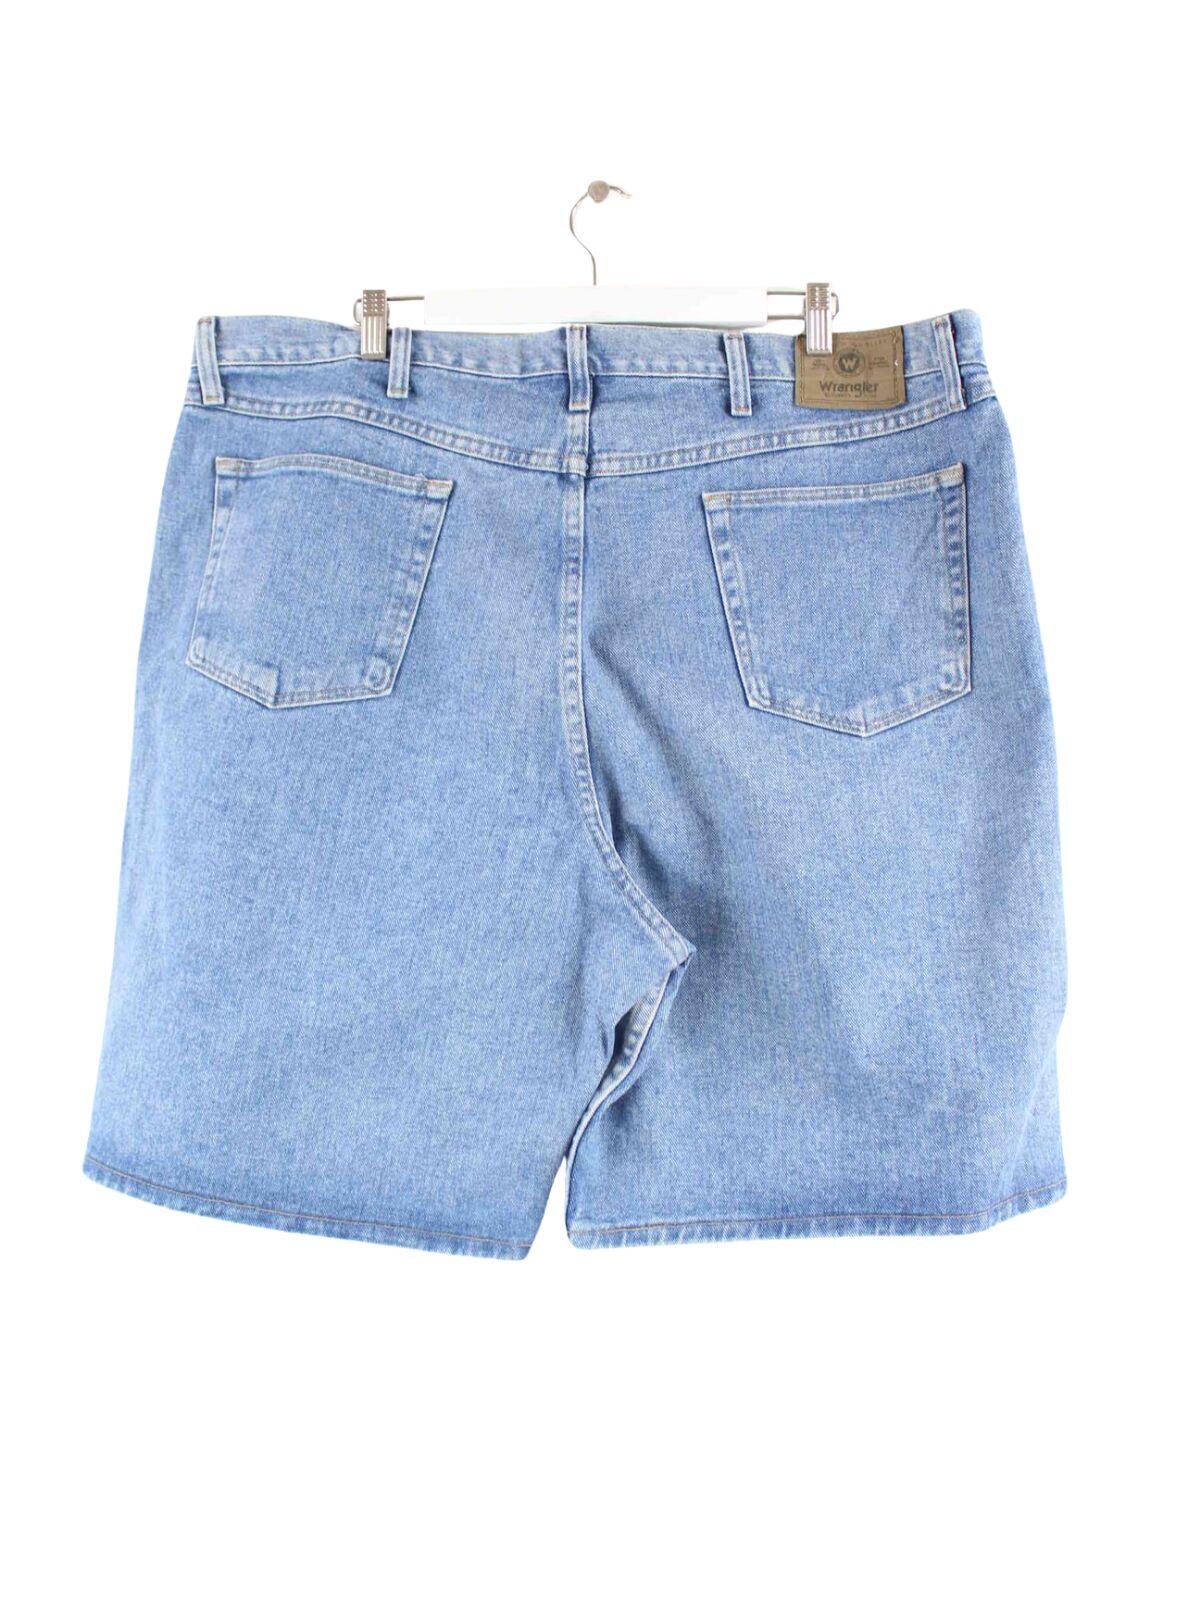 Wrangler Jeans Shorts Blau W42 (back image)